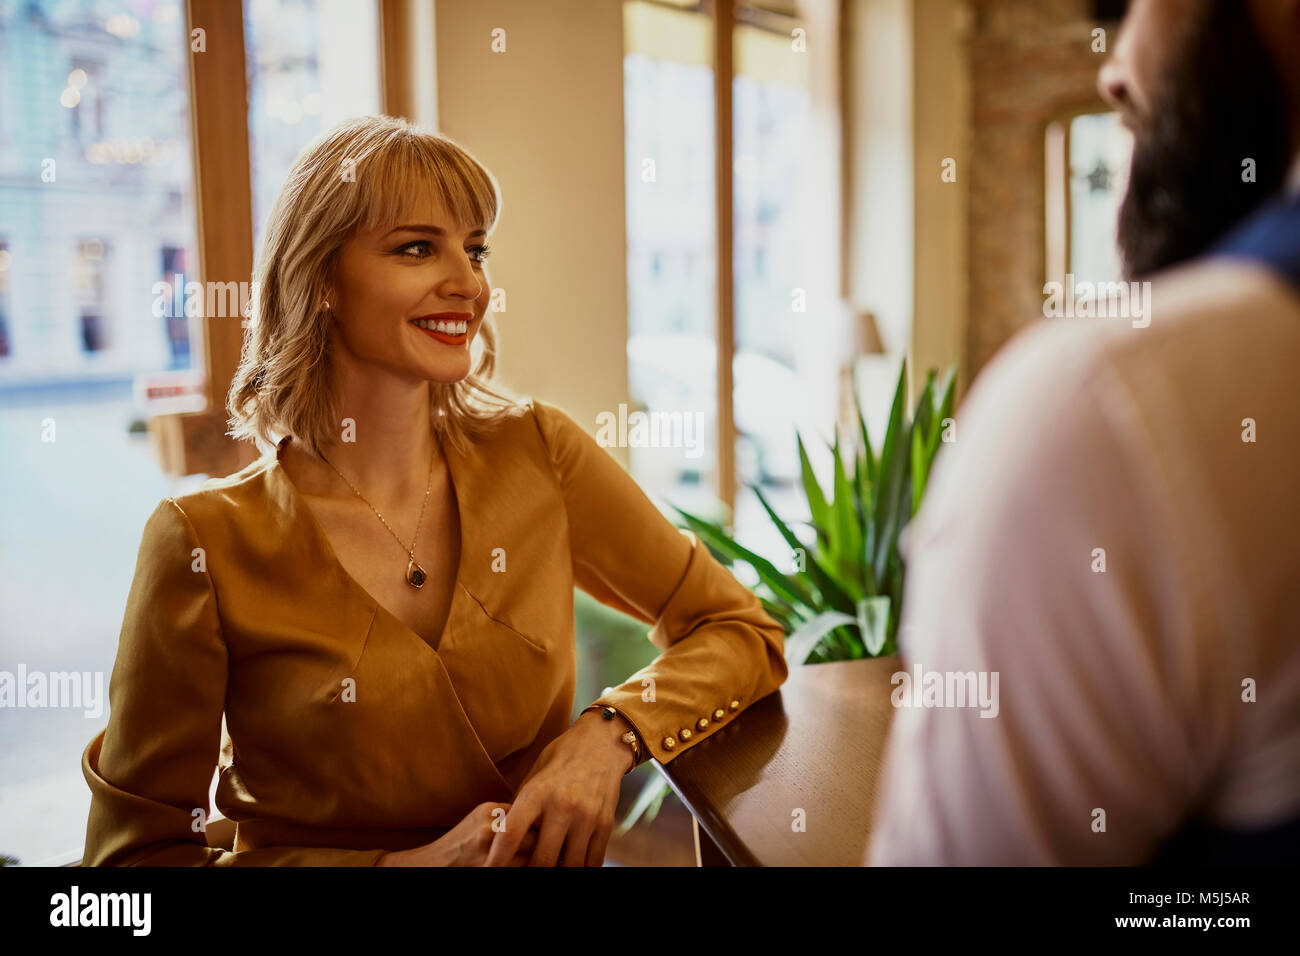 Elegante mujer sonriente con un hombre en un bar. Foto de stock